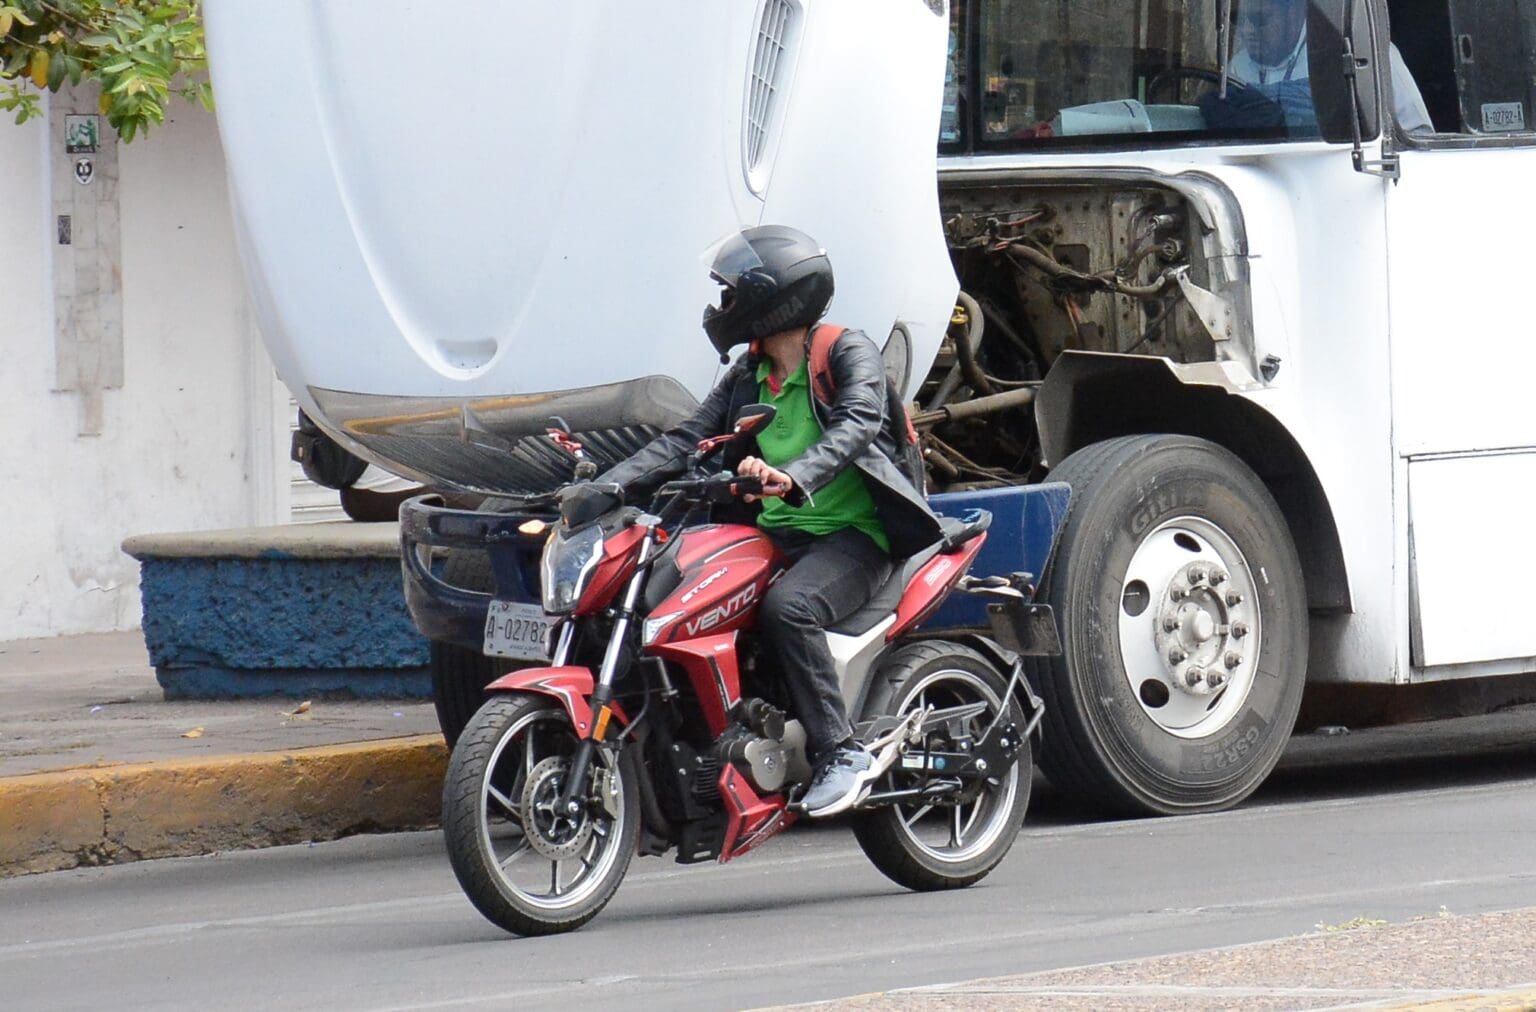 Para prevenir delitos piden engomado para motocicletas